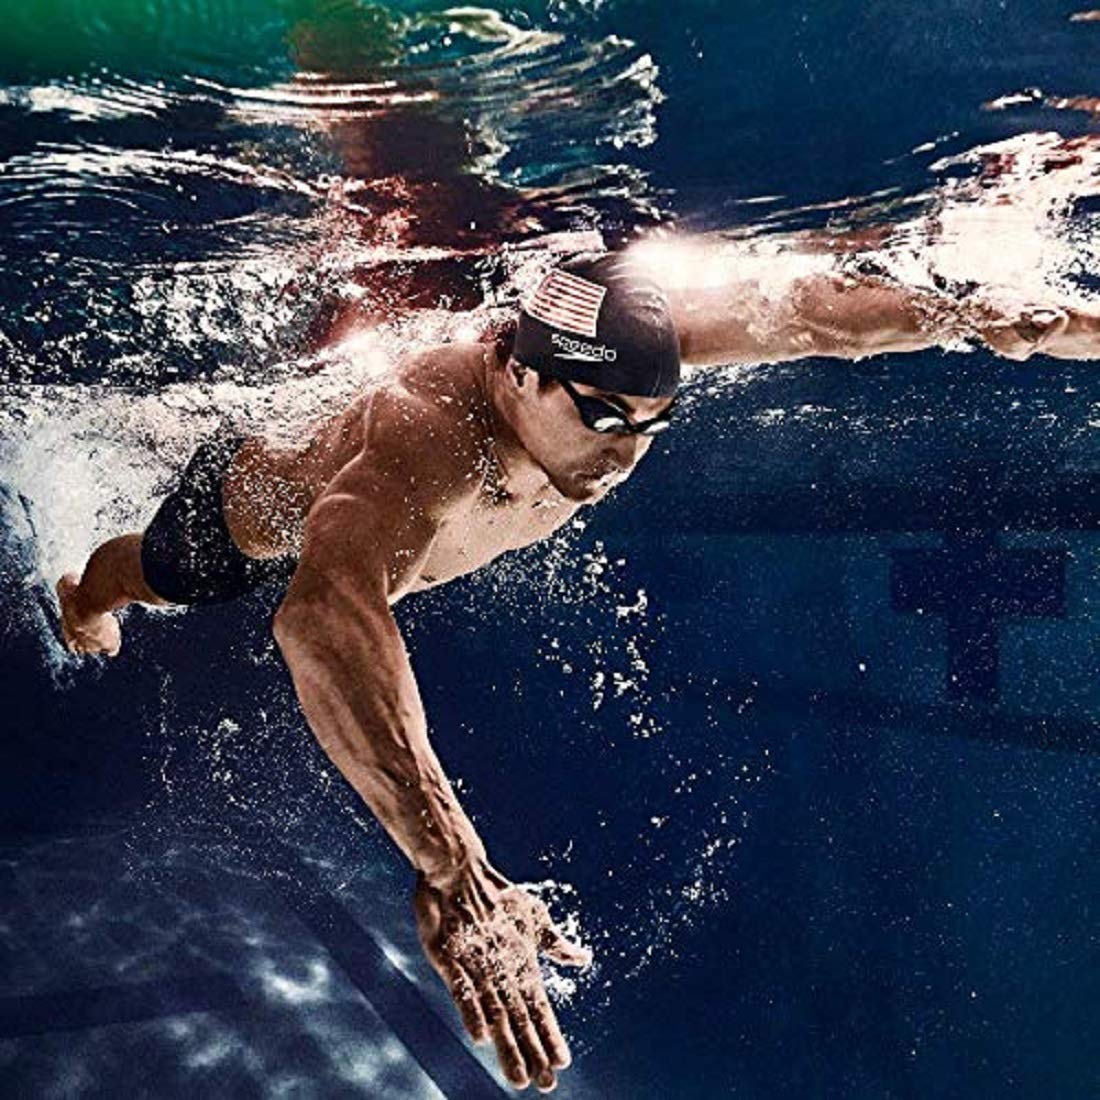 Speedo Male Swimwear Essential Houston Jammer, Navy - Best Price online Prokicksports.com